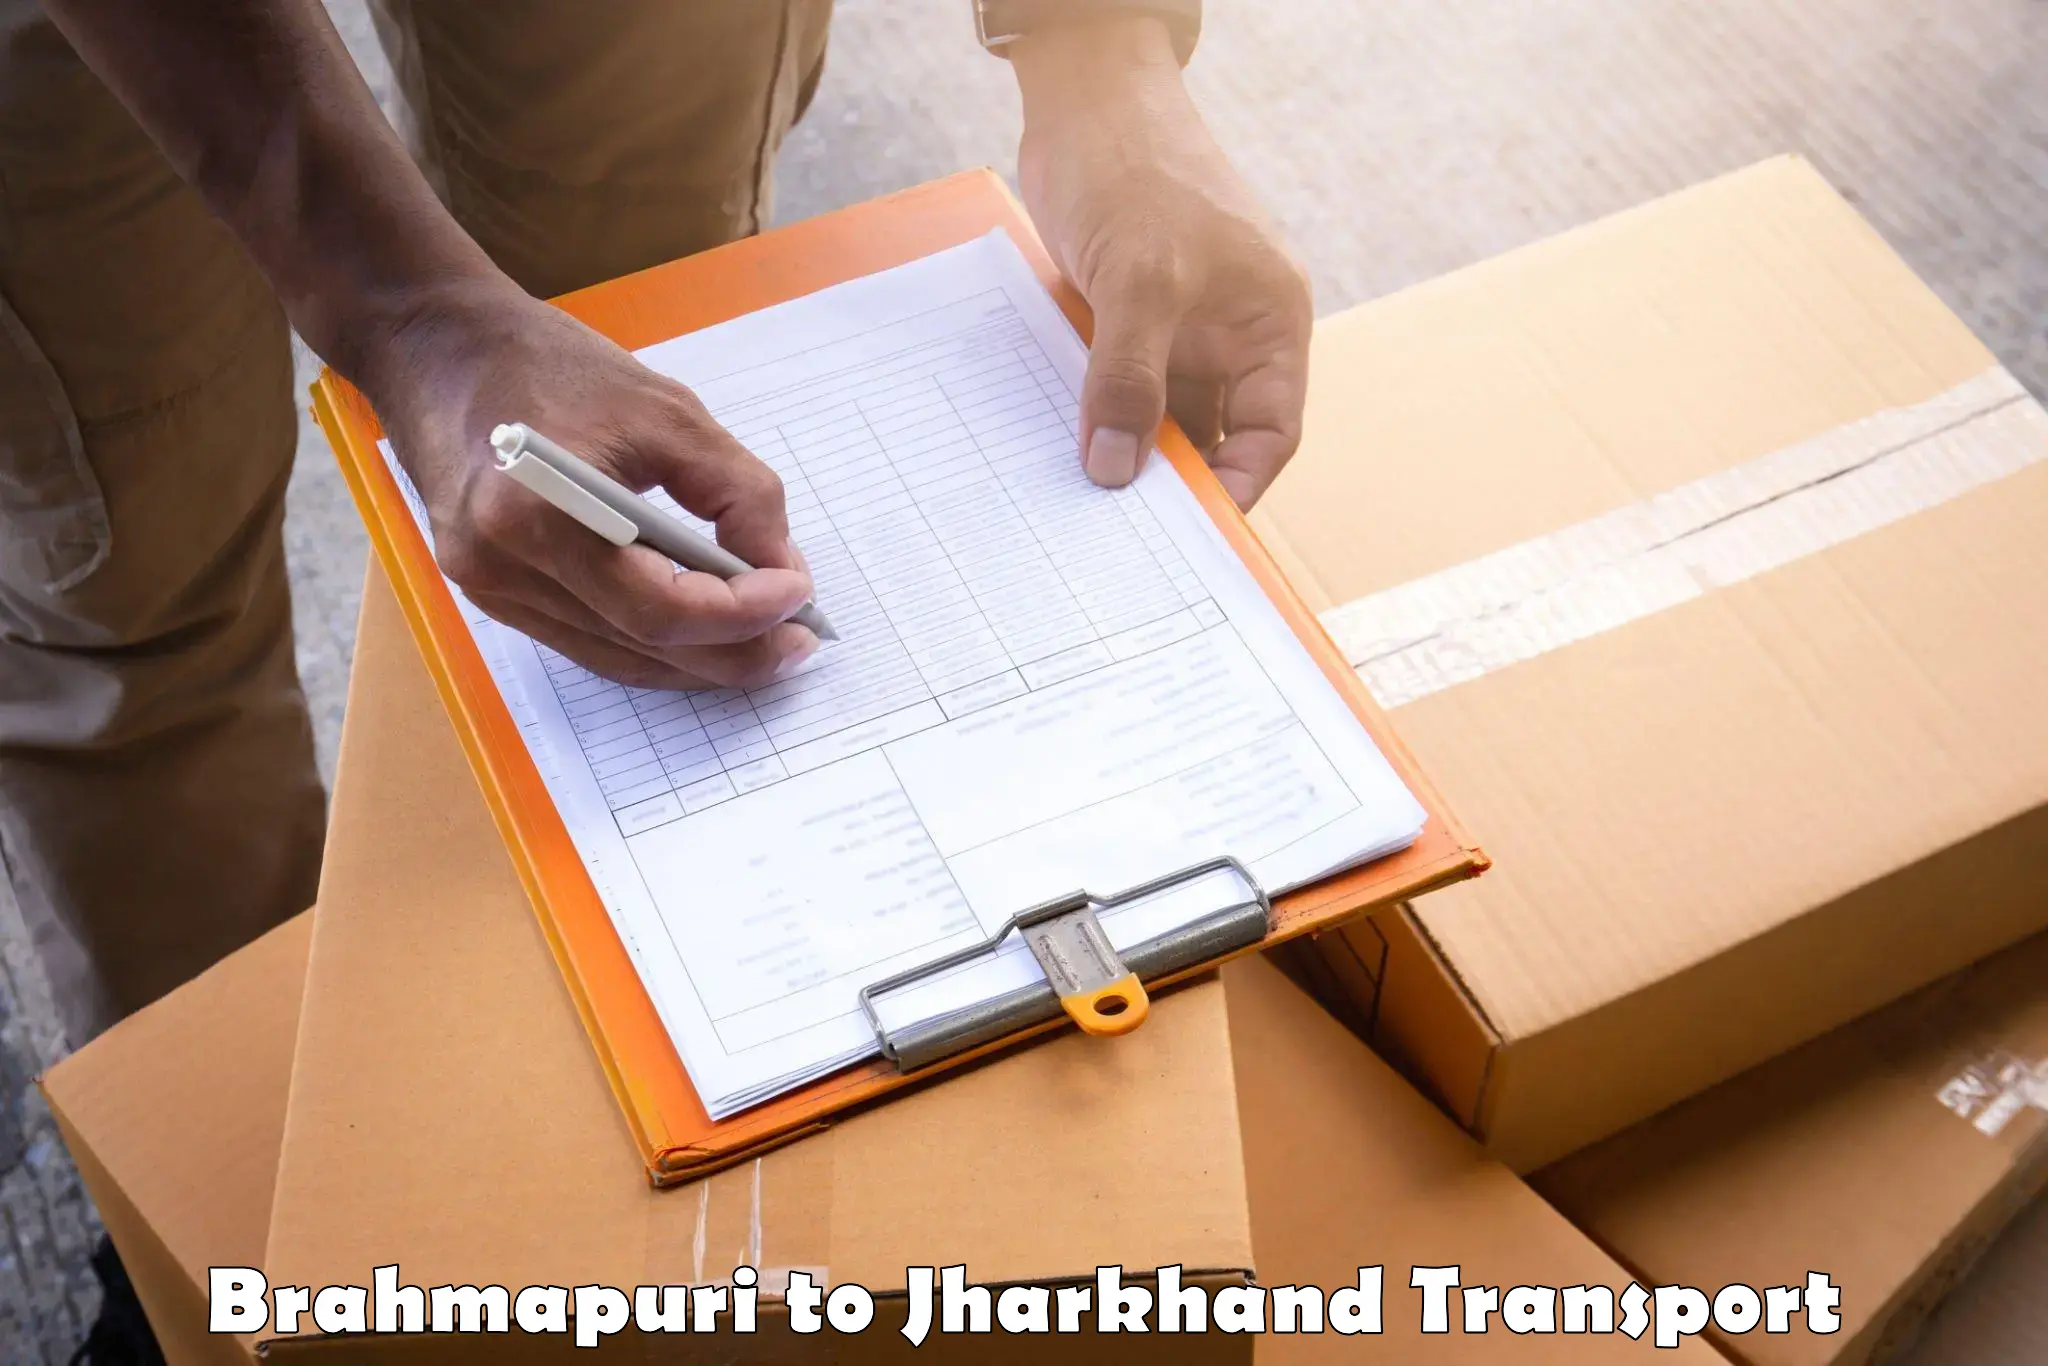 Daily parcel service transport Brahmapuri to Noamundi